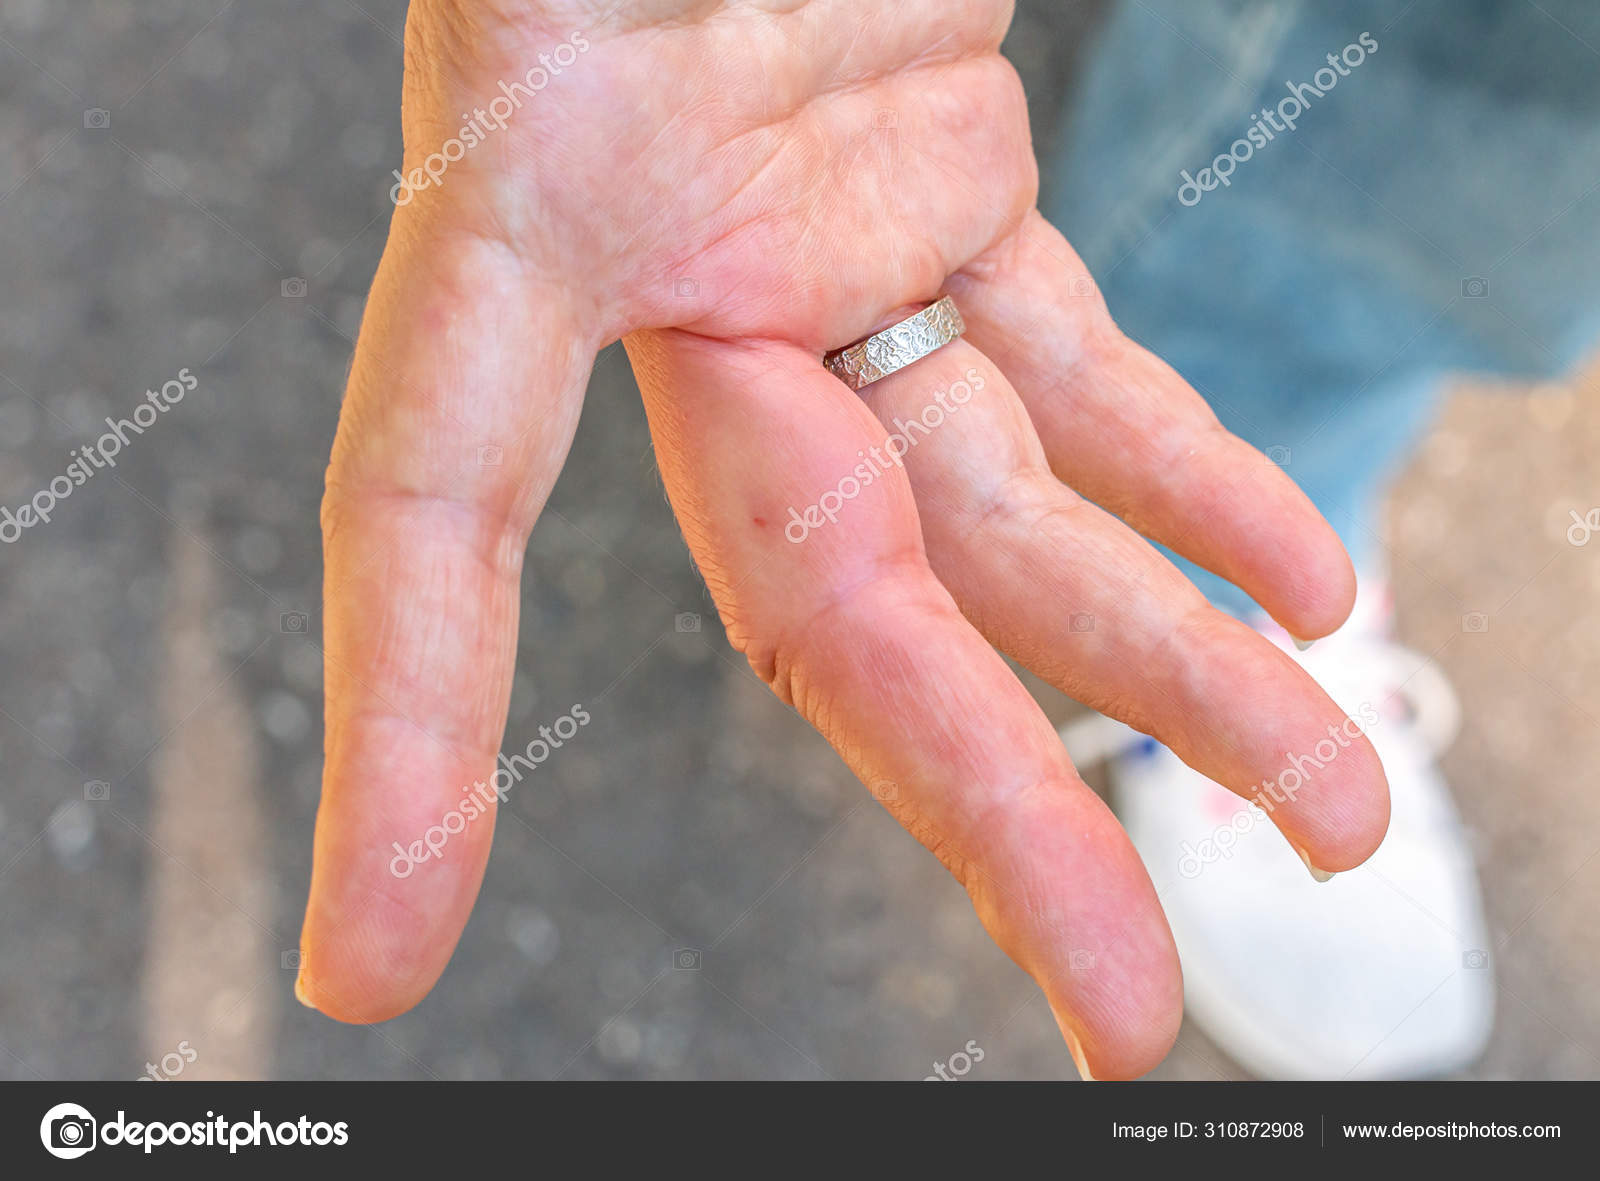 My Finger is Swollen – Am I Normal? | University of Utah Health